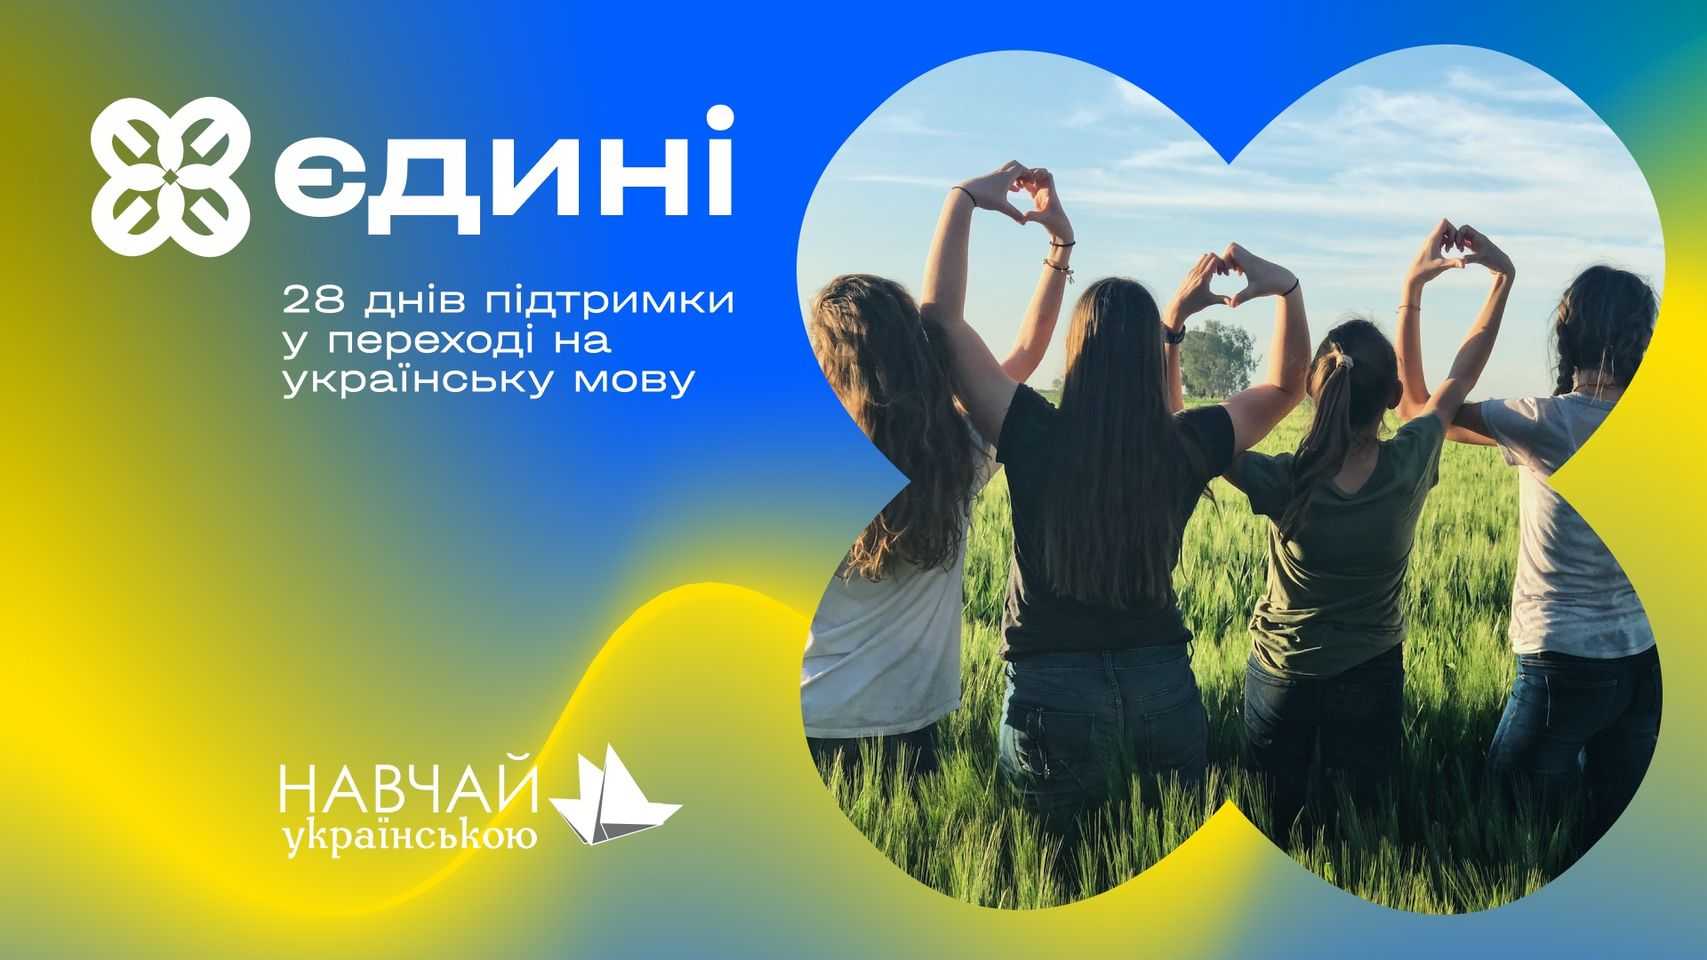 Тепер українська мова ще доступніша! Western NIS Enterprise Fund підтримав проєкт «Єдині» image